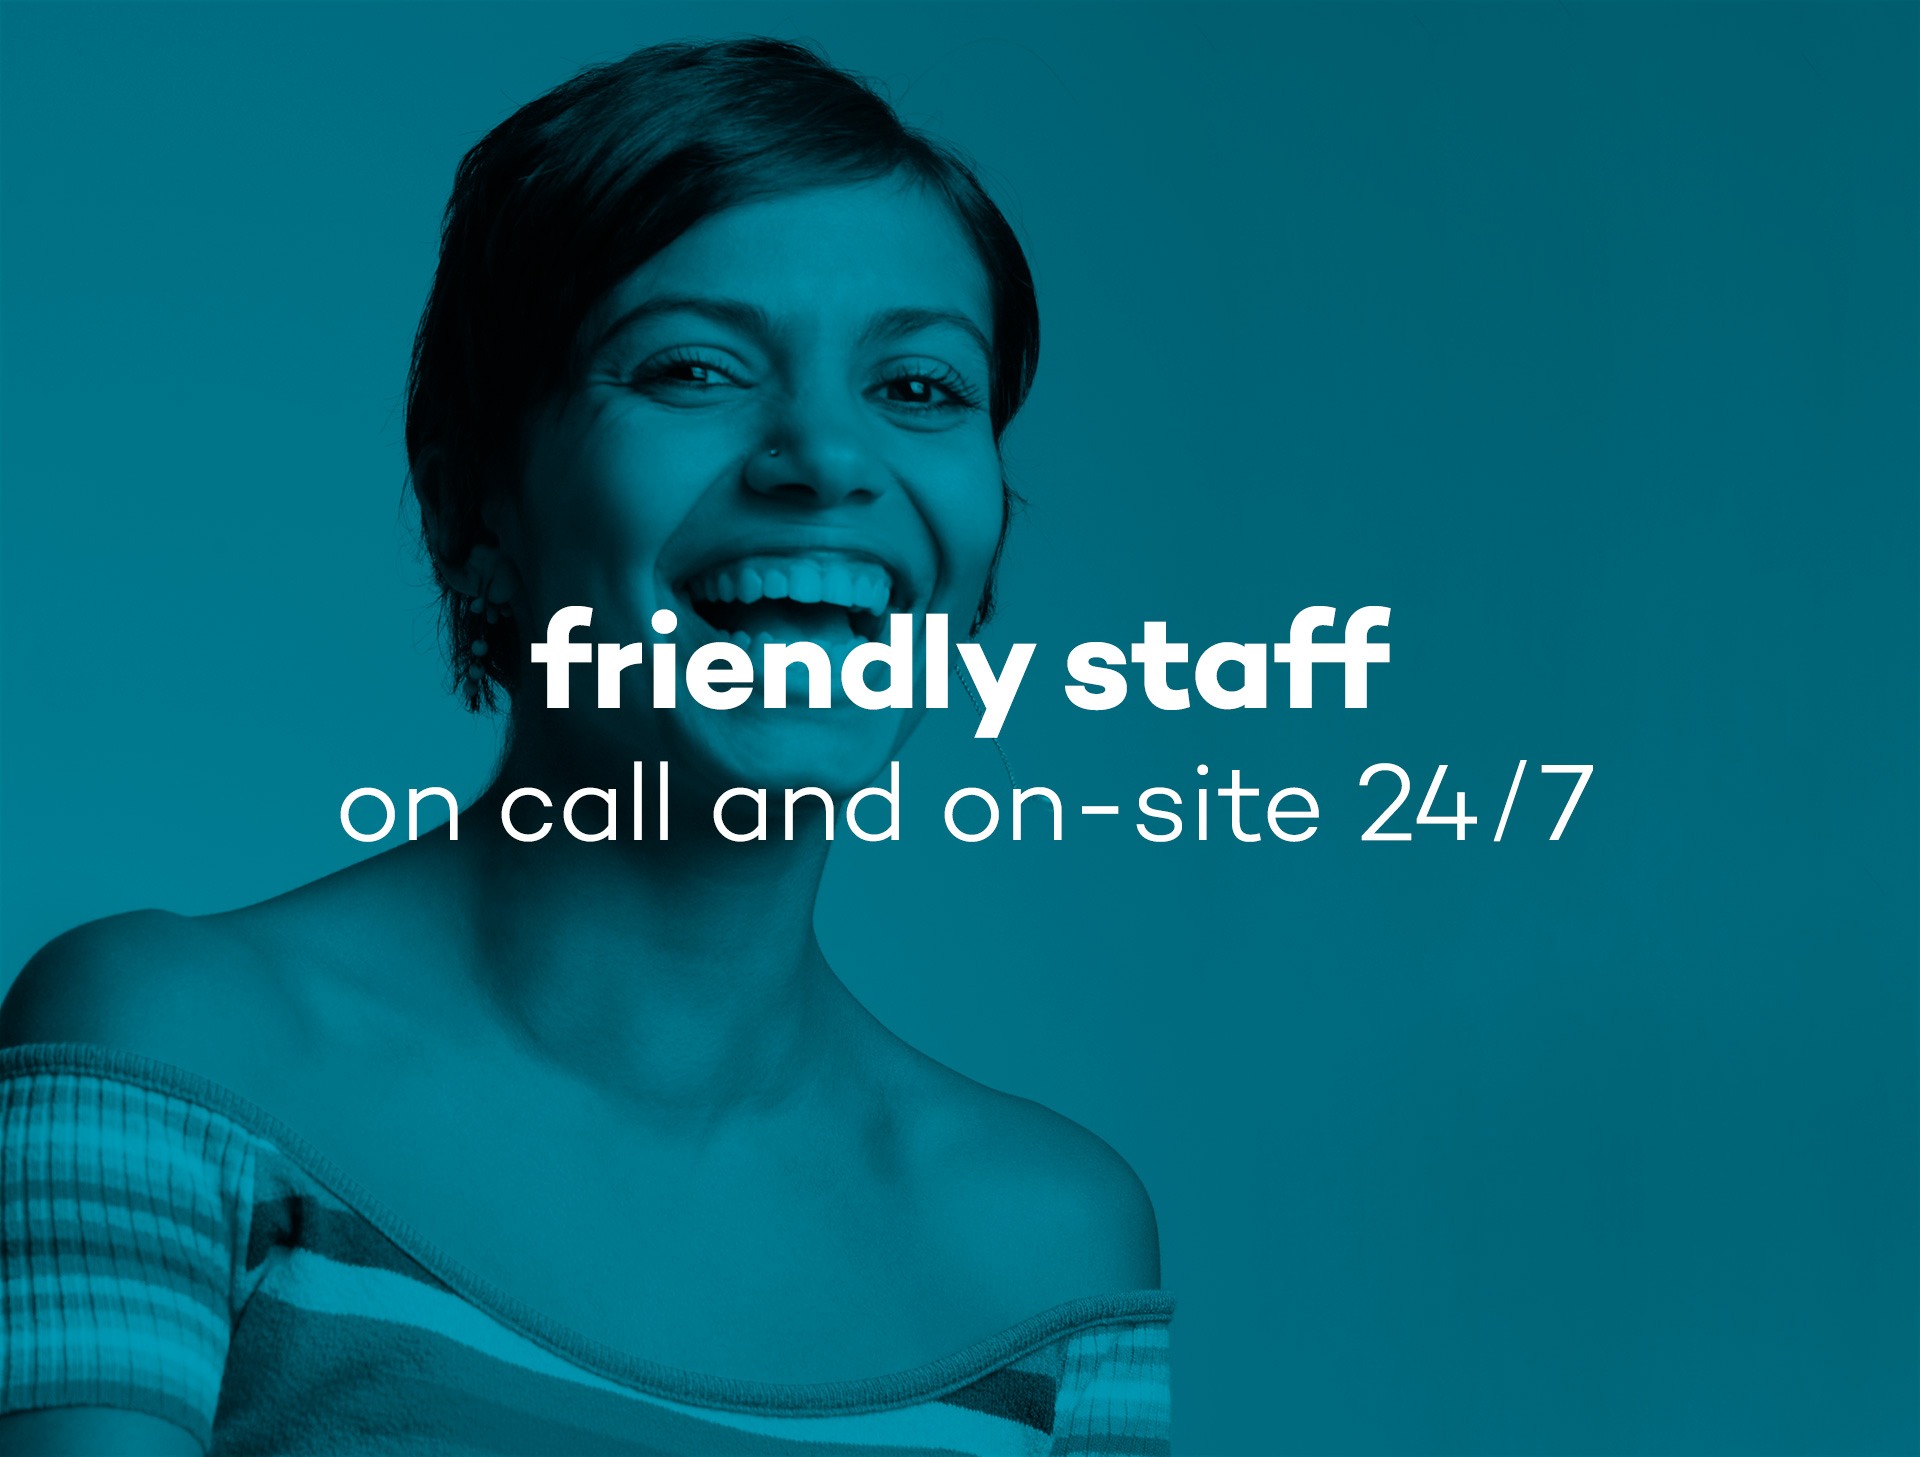 friendly-staff